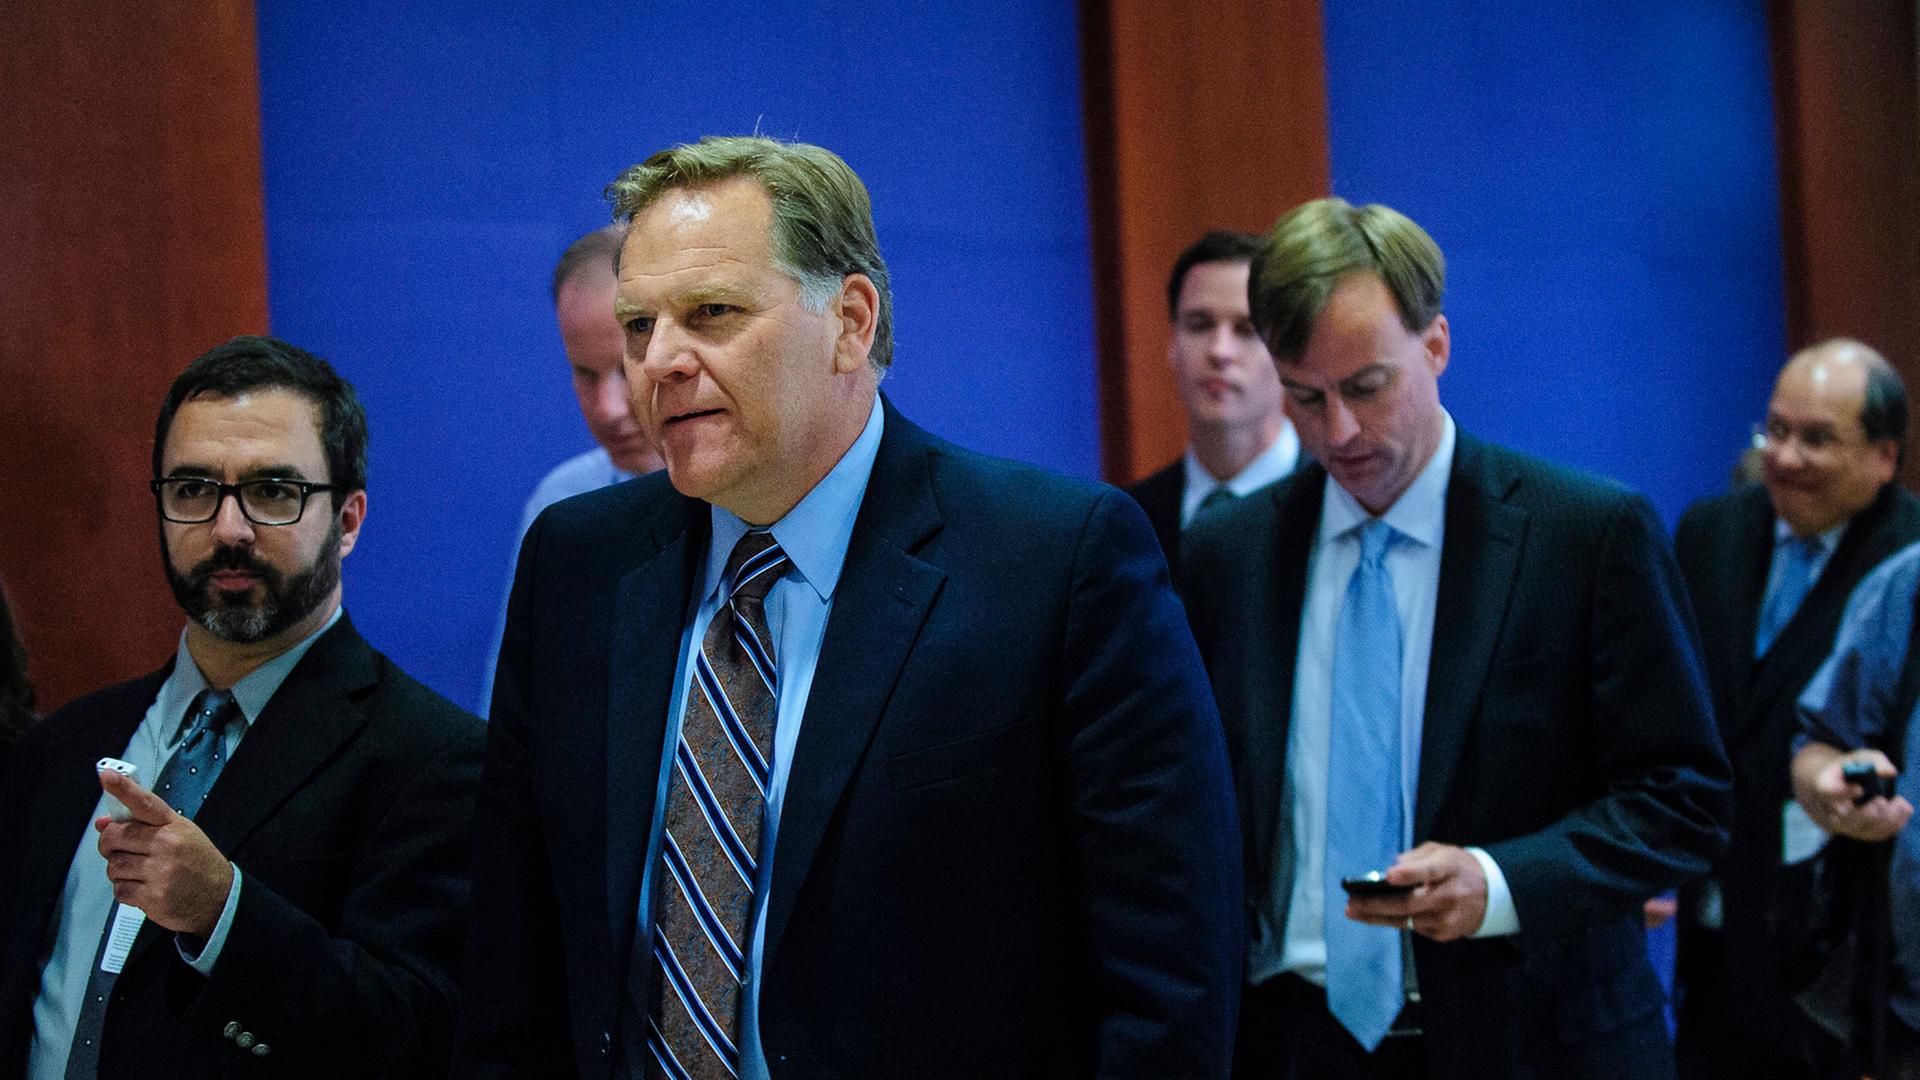 Der US-Abgeordnete Mike Rogers (2. von links) geht mit mehreren anderen Personen zu einer Anhörung im Kongress.